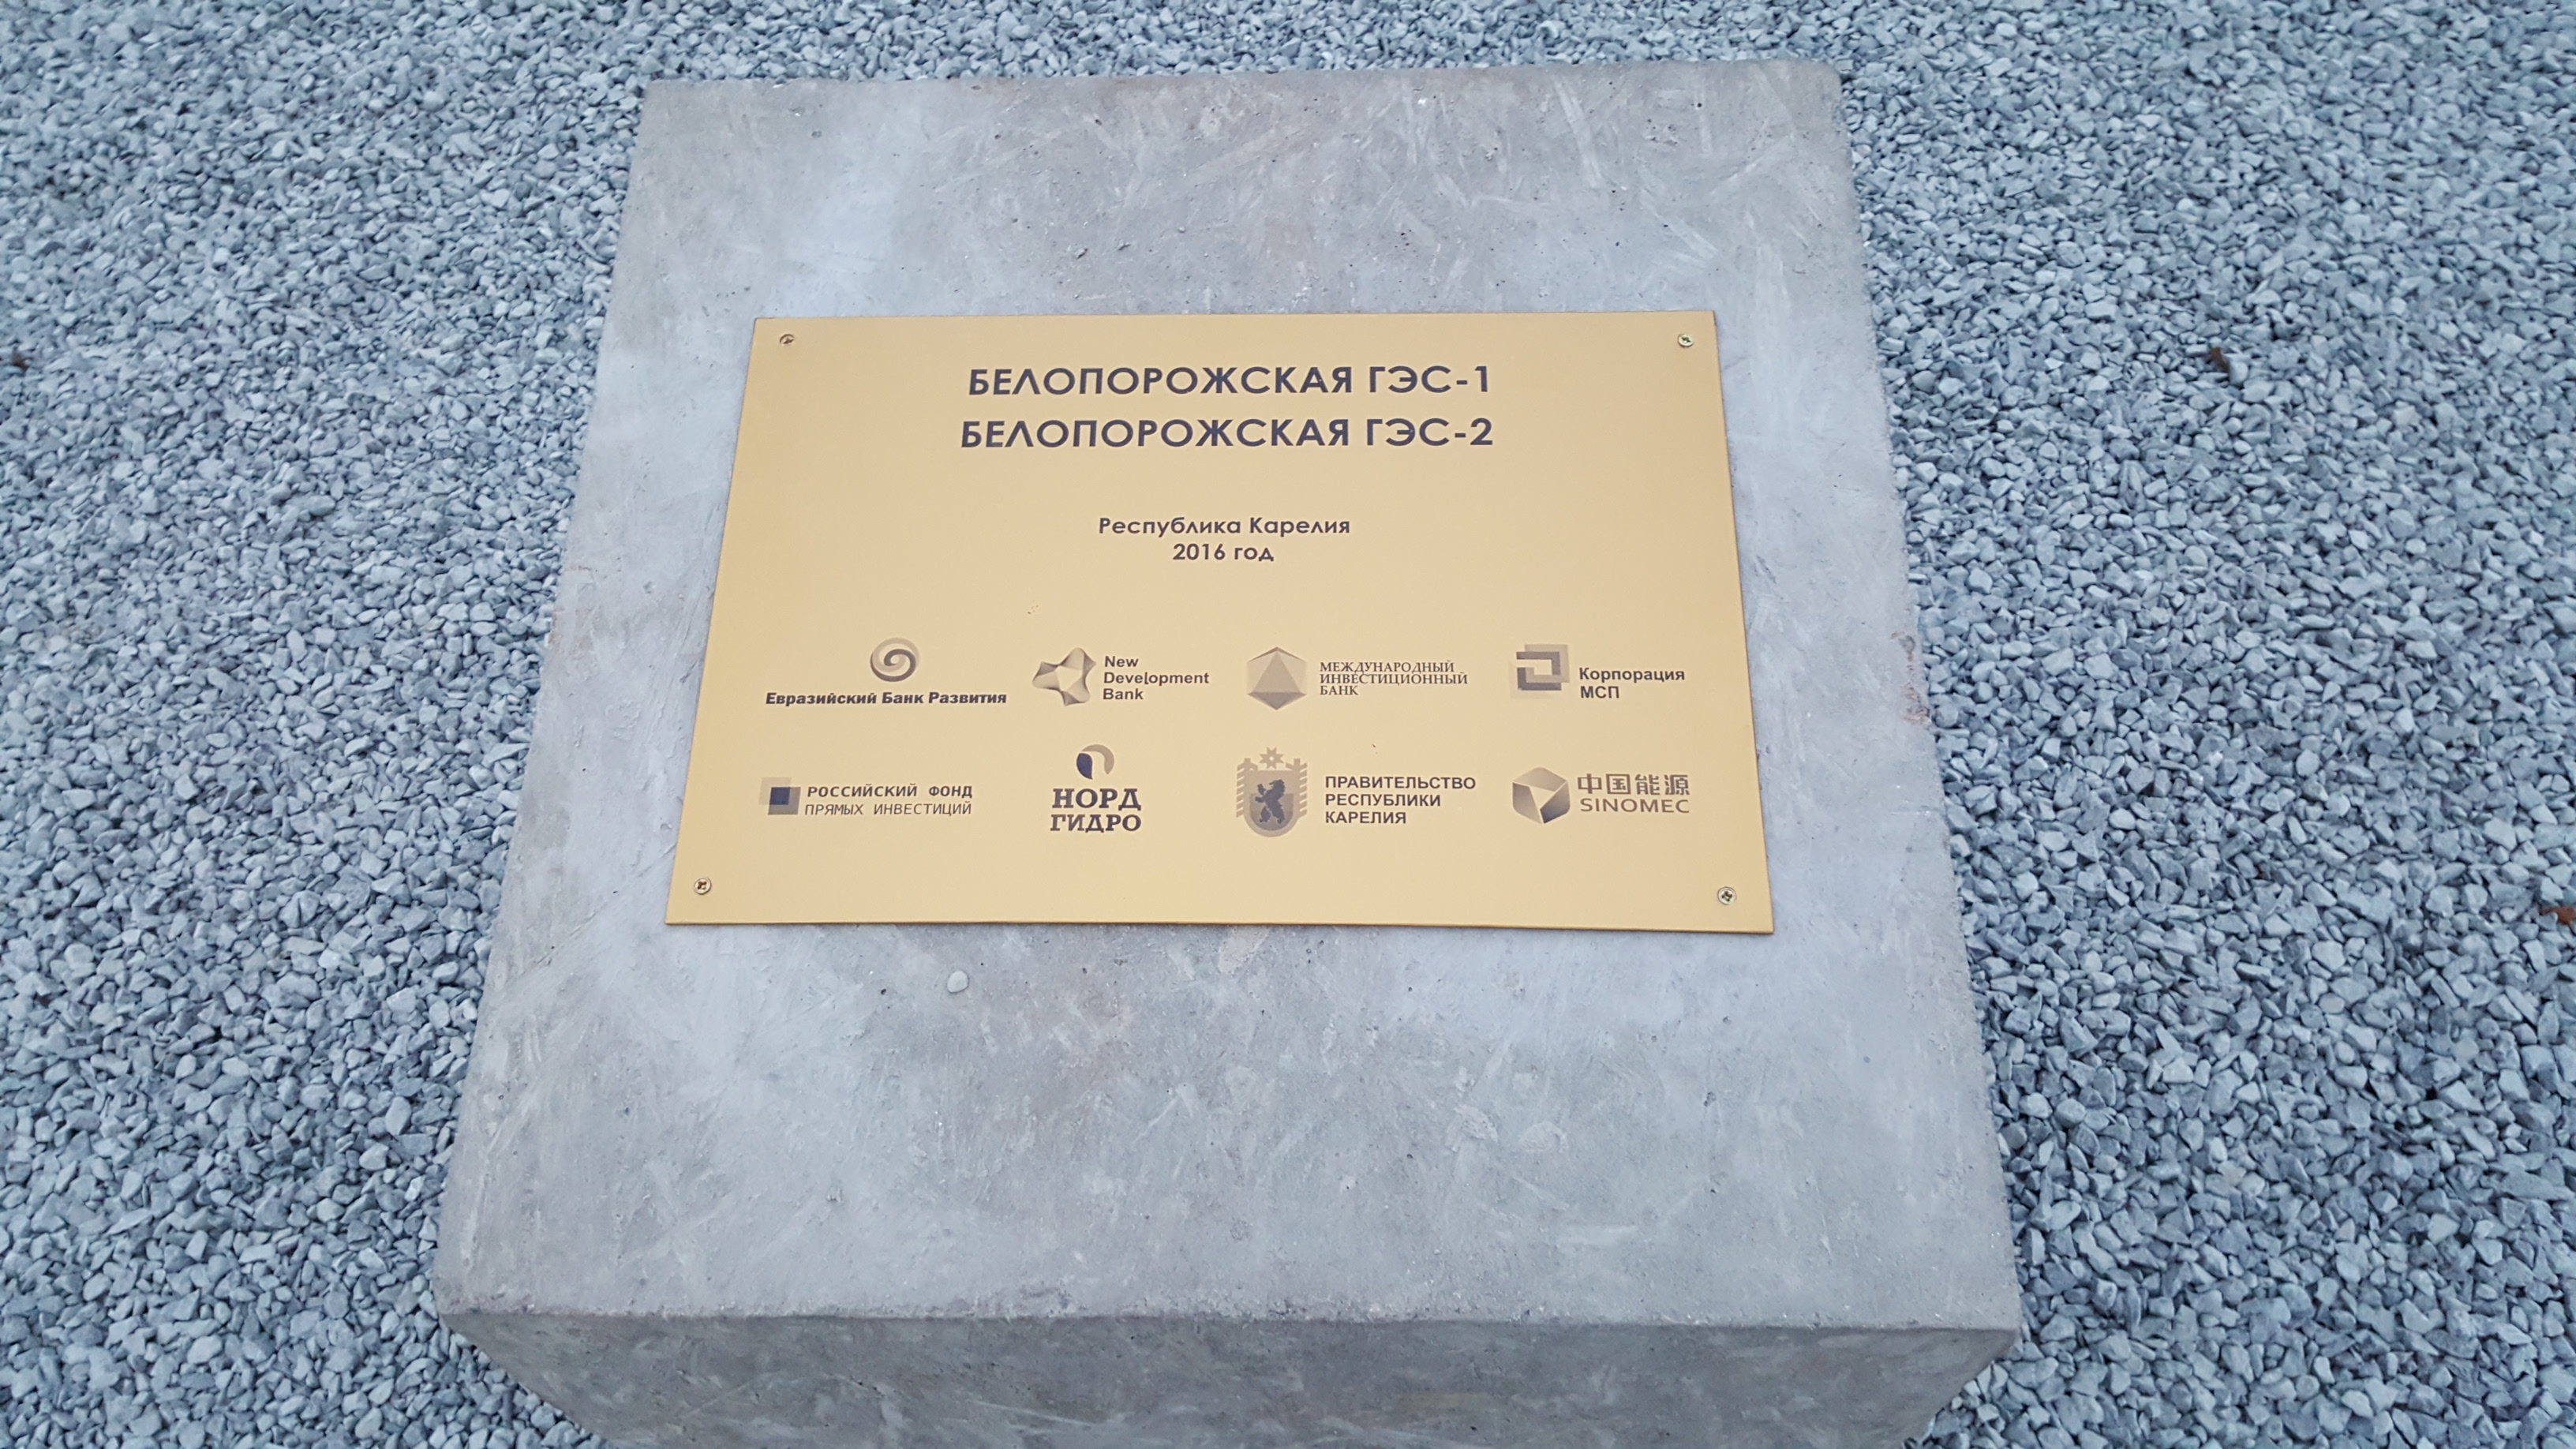 Глава Карелии заложил первый куб бетона и «капсулу времени» в честь начала строительства двух Белопорожских ГЭС – первого российского проекта Нового банка развития, созданного БРИКС